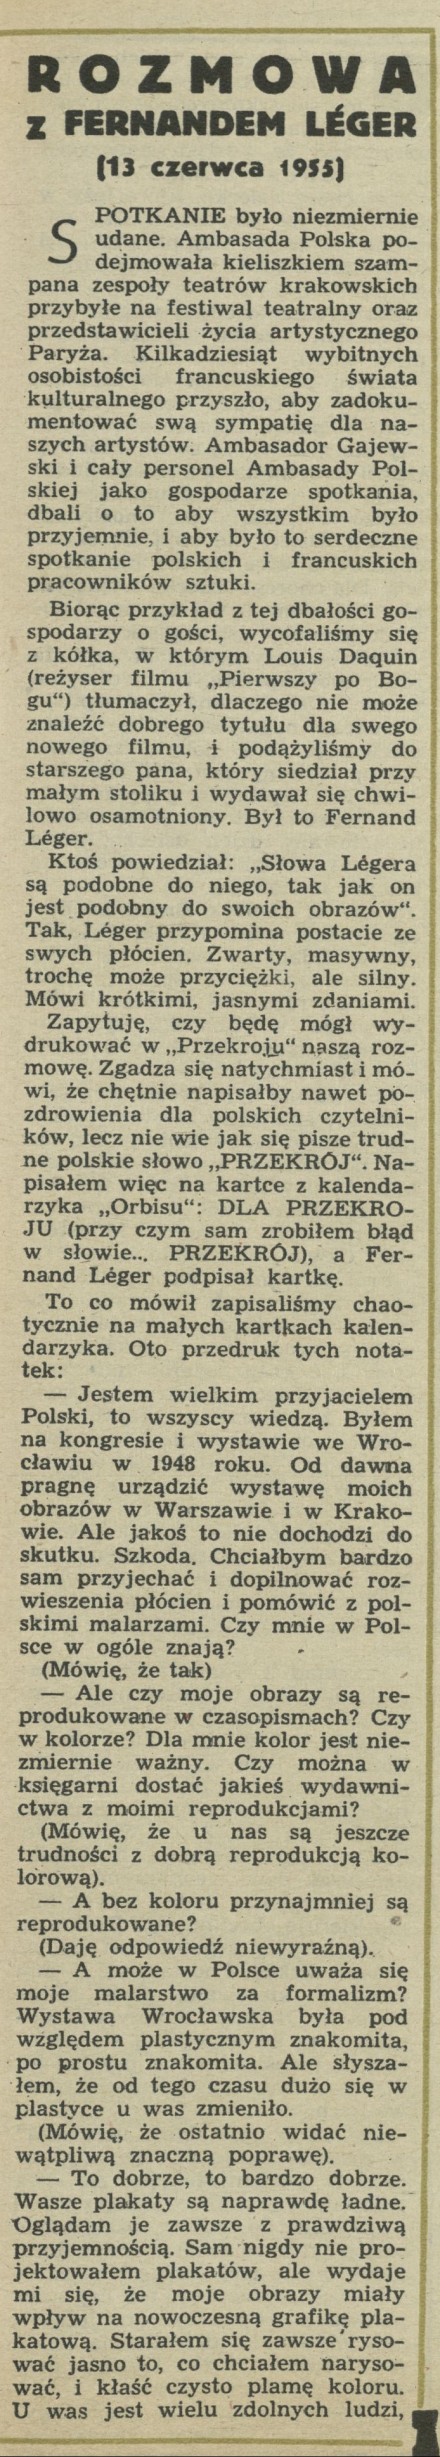 Rozmowa z Fernandem Leger (13 czerwca 1955)